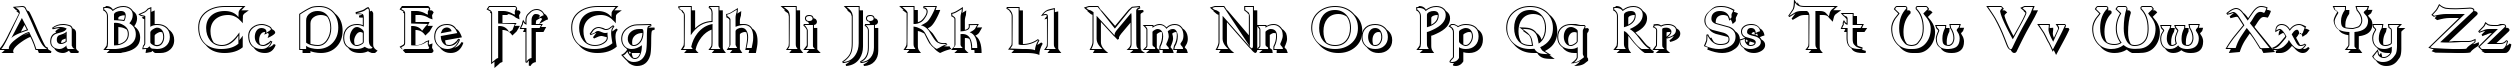 Пример написания английского алфавита шрифтом Dumbledor 3 Shadow